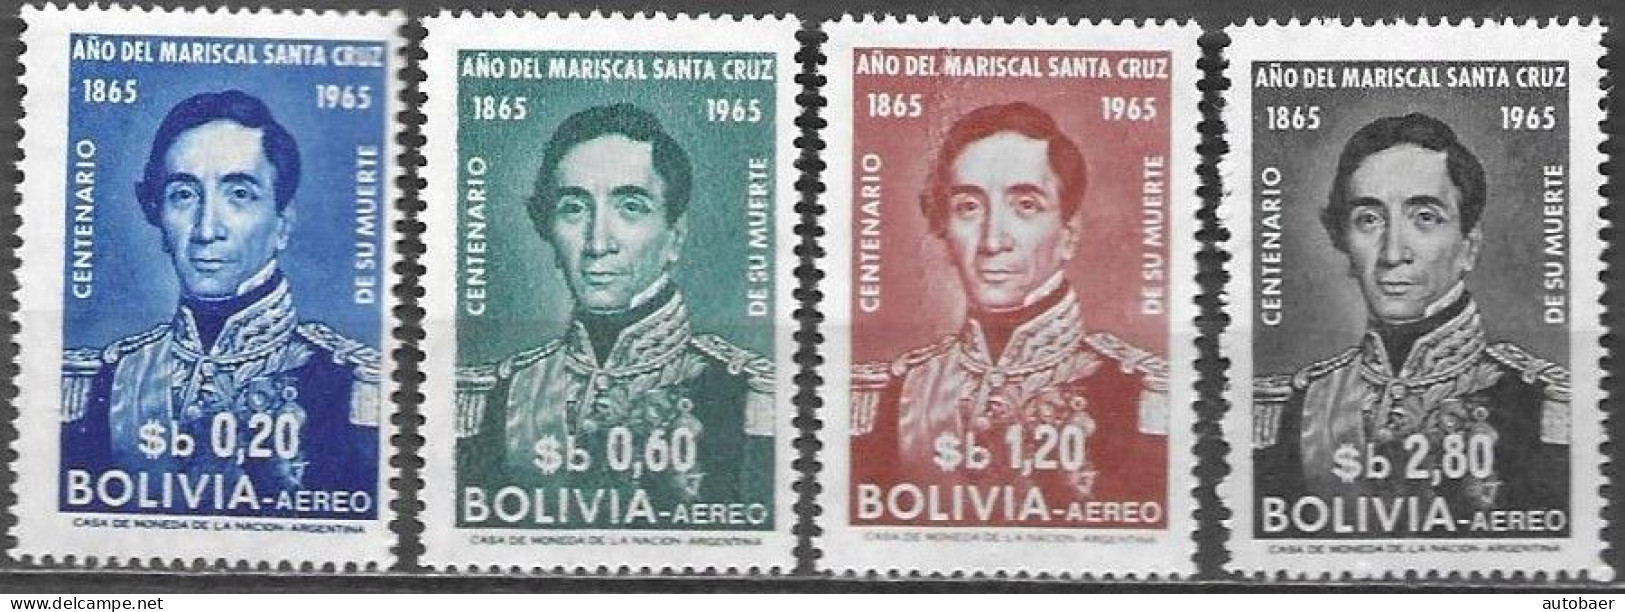 Bolivia Bolivie Bolivien 1966/1965 Mariscal Andres De Santa Cruz Michel No. 709-12 MNH Mint Postfrisch Neuf ** - Bolivien